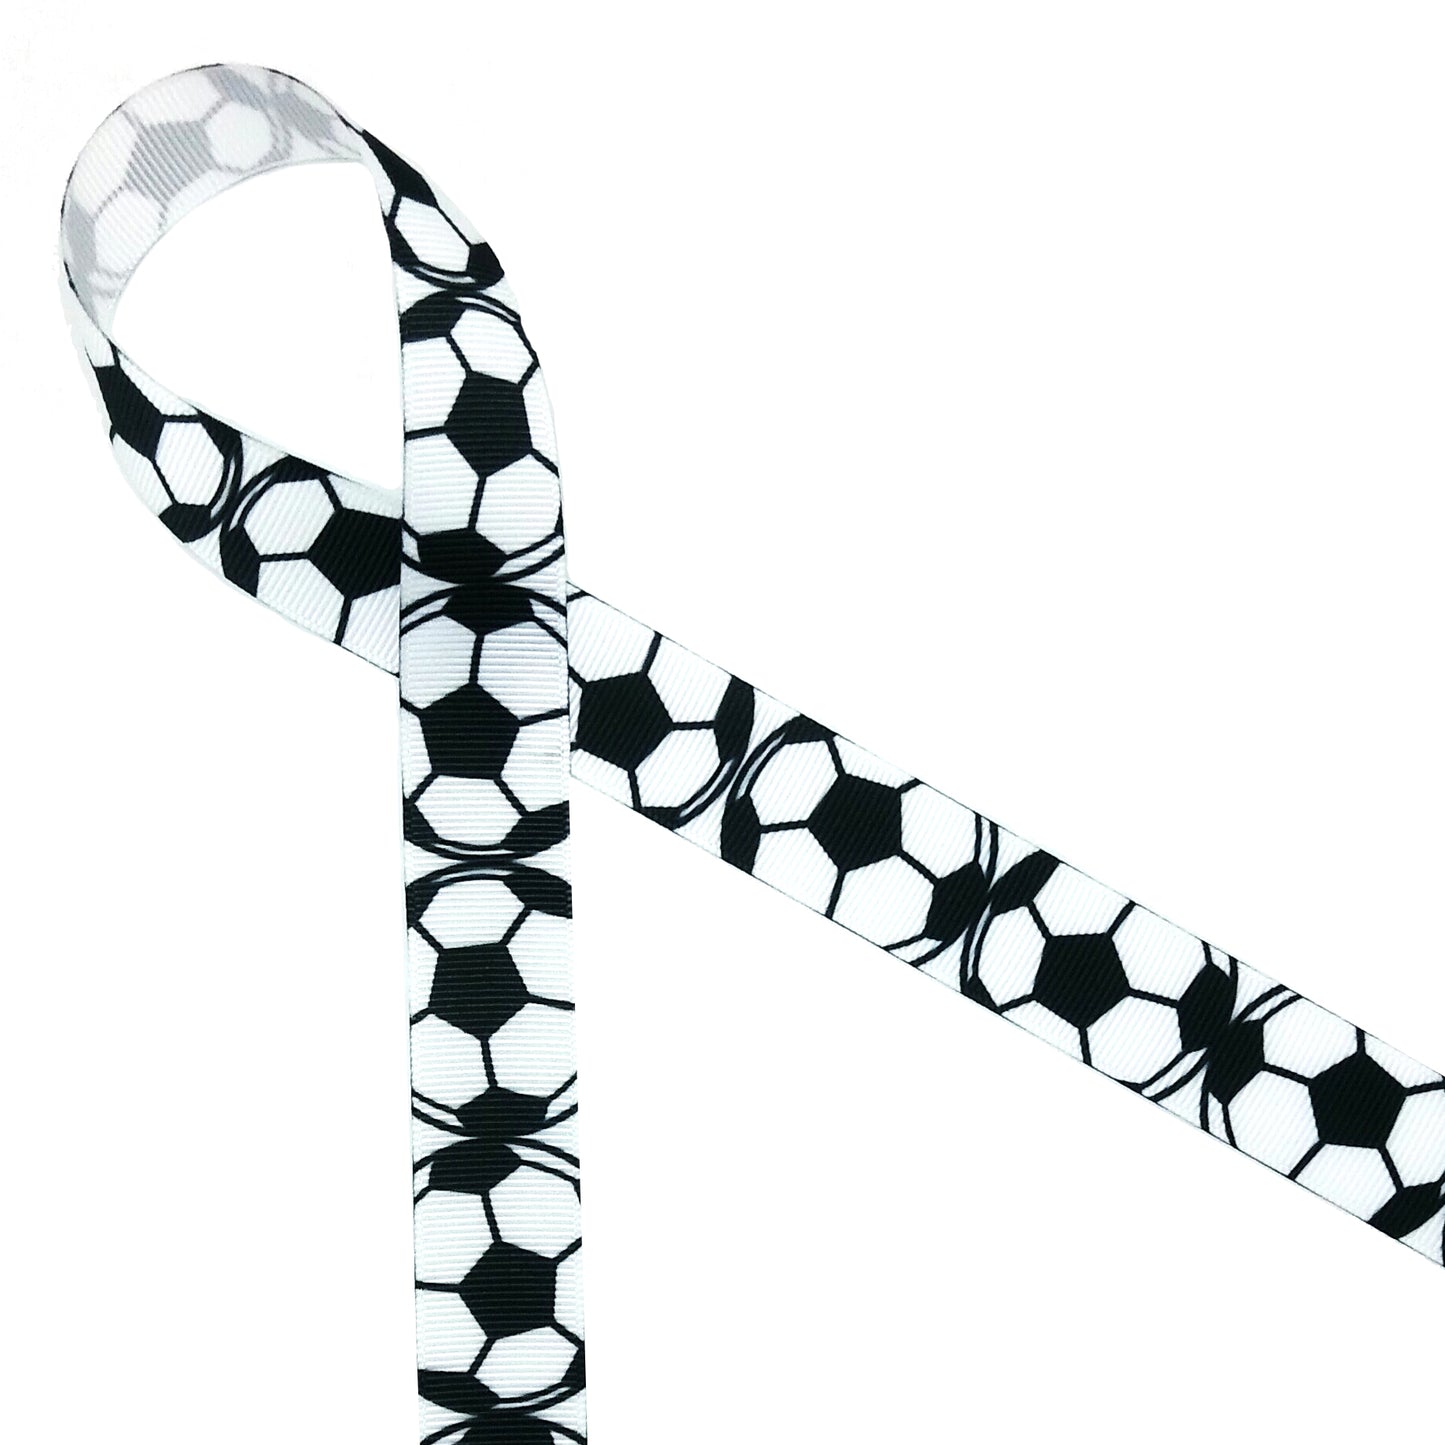 Soccer Ball Ribbon black and white soccer balls printed on 5/8" white single face satin or grosgrain